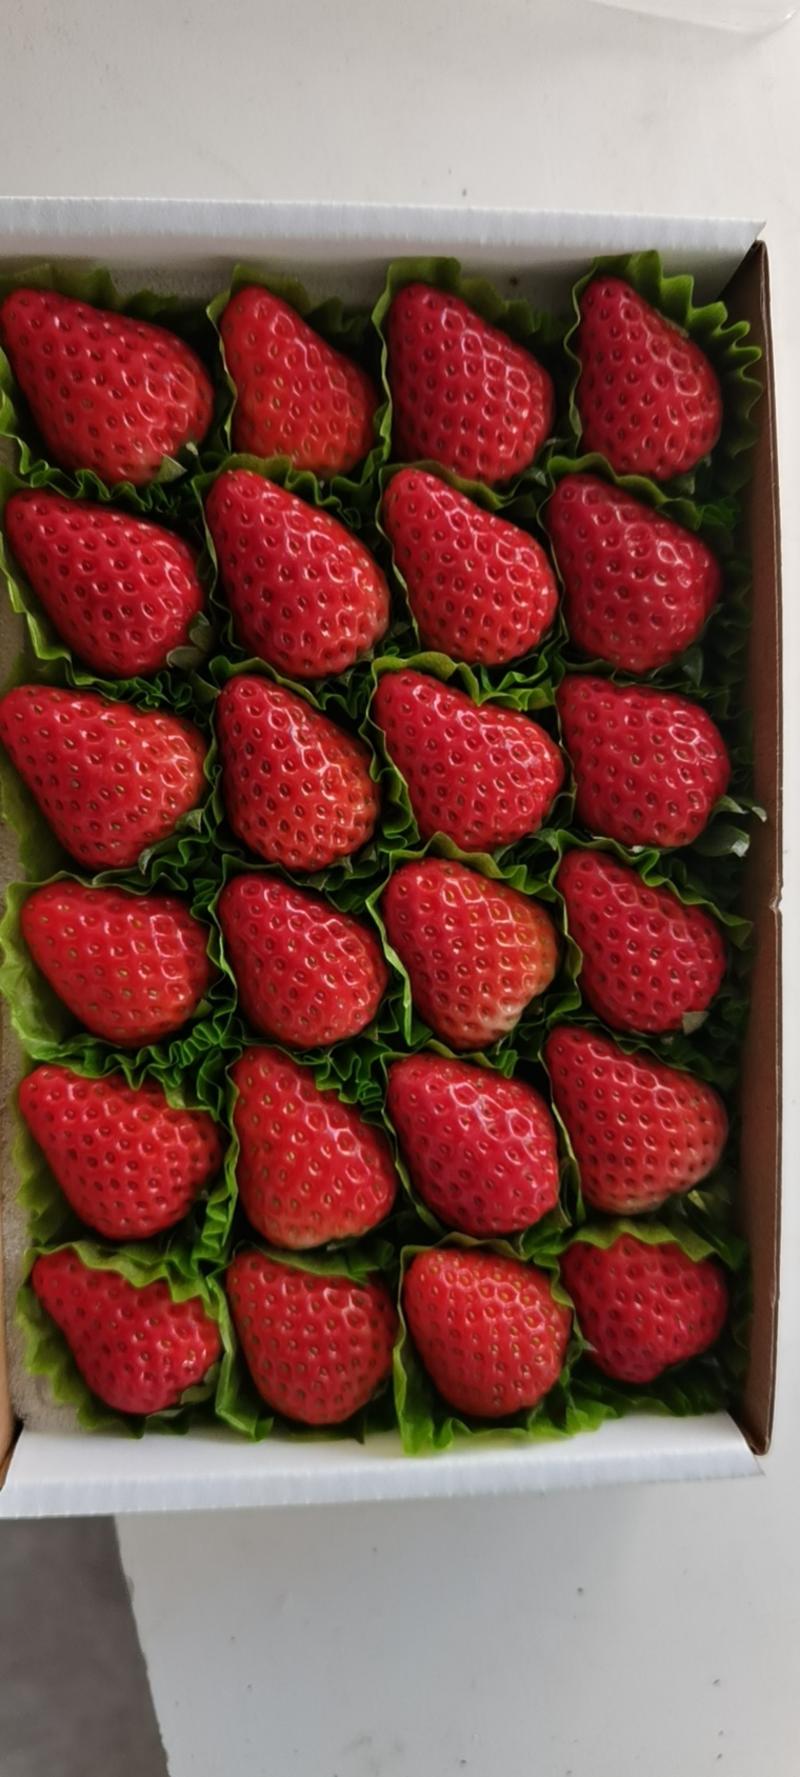 丹东东港九九红颜草莓团购烘焙巧克十盒一诚招各大批发商